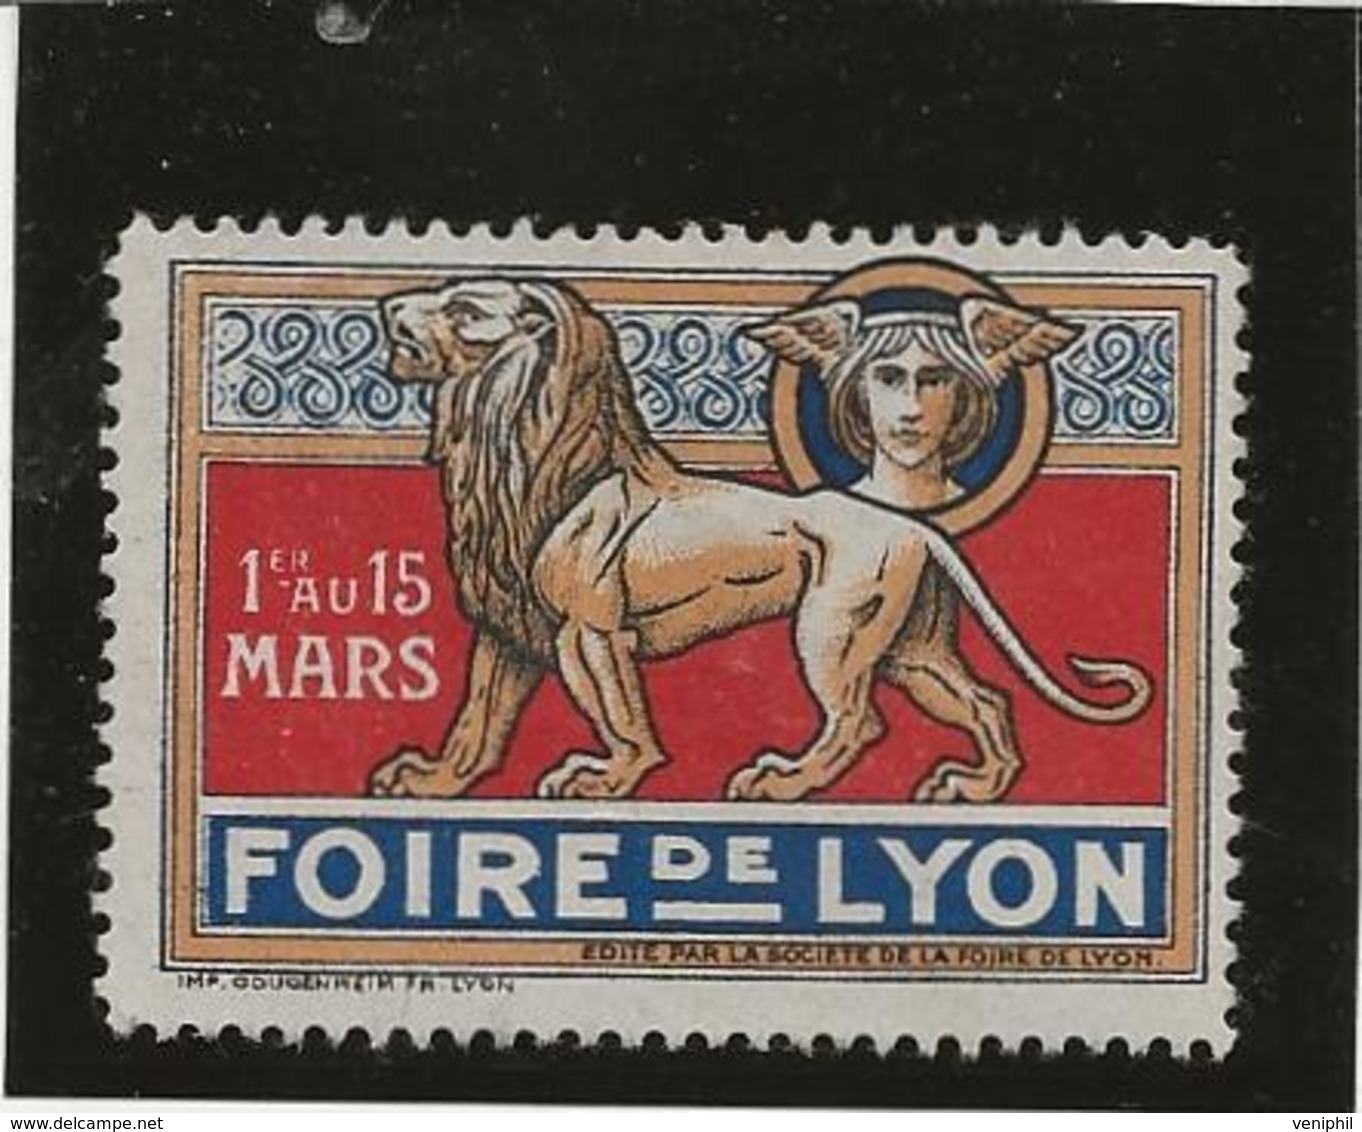 VIGNETTE FOIRE DE LYON 1920 - Tourisme (Vignettes)